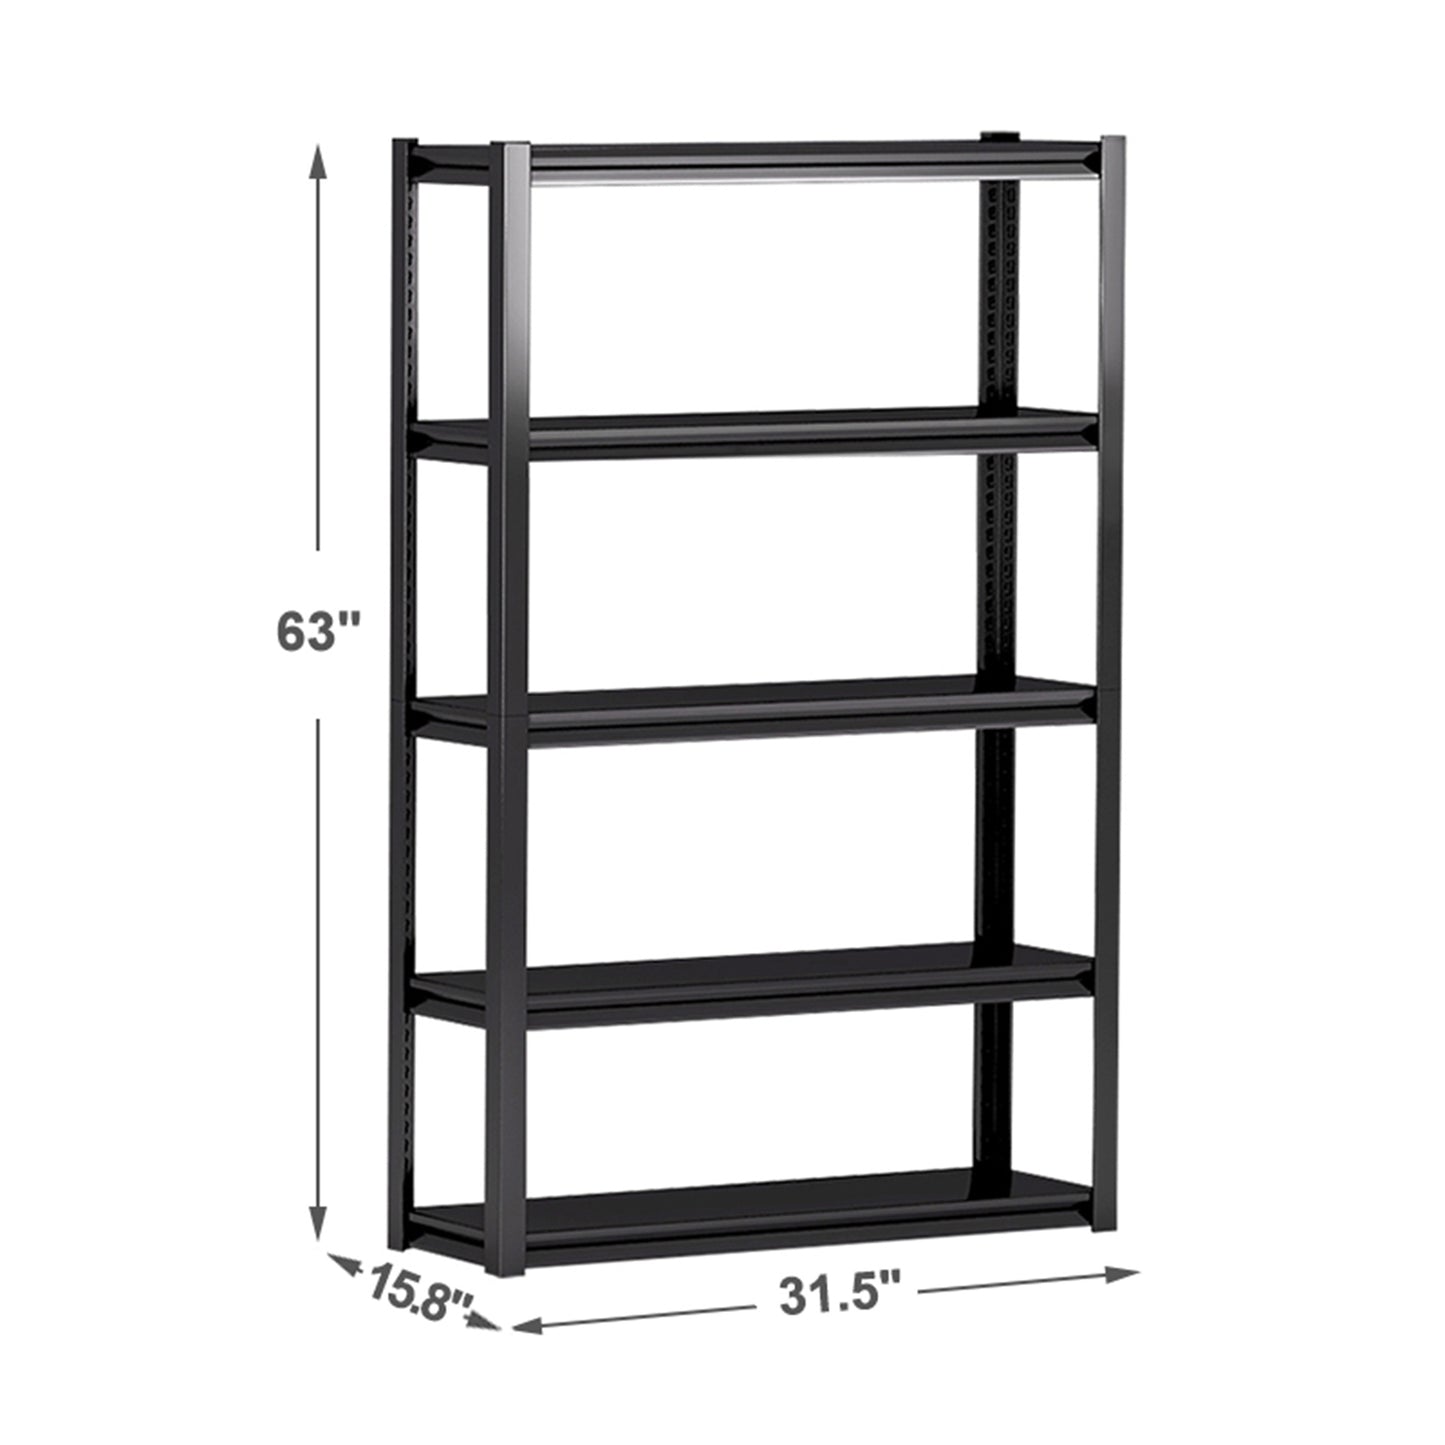 Adjustable 5 tier metal shelf, living room, bedroom, kitchen, garage, tool room